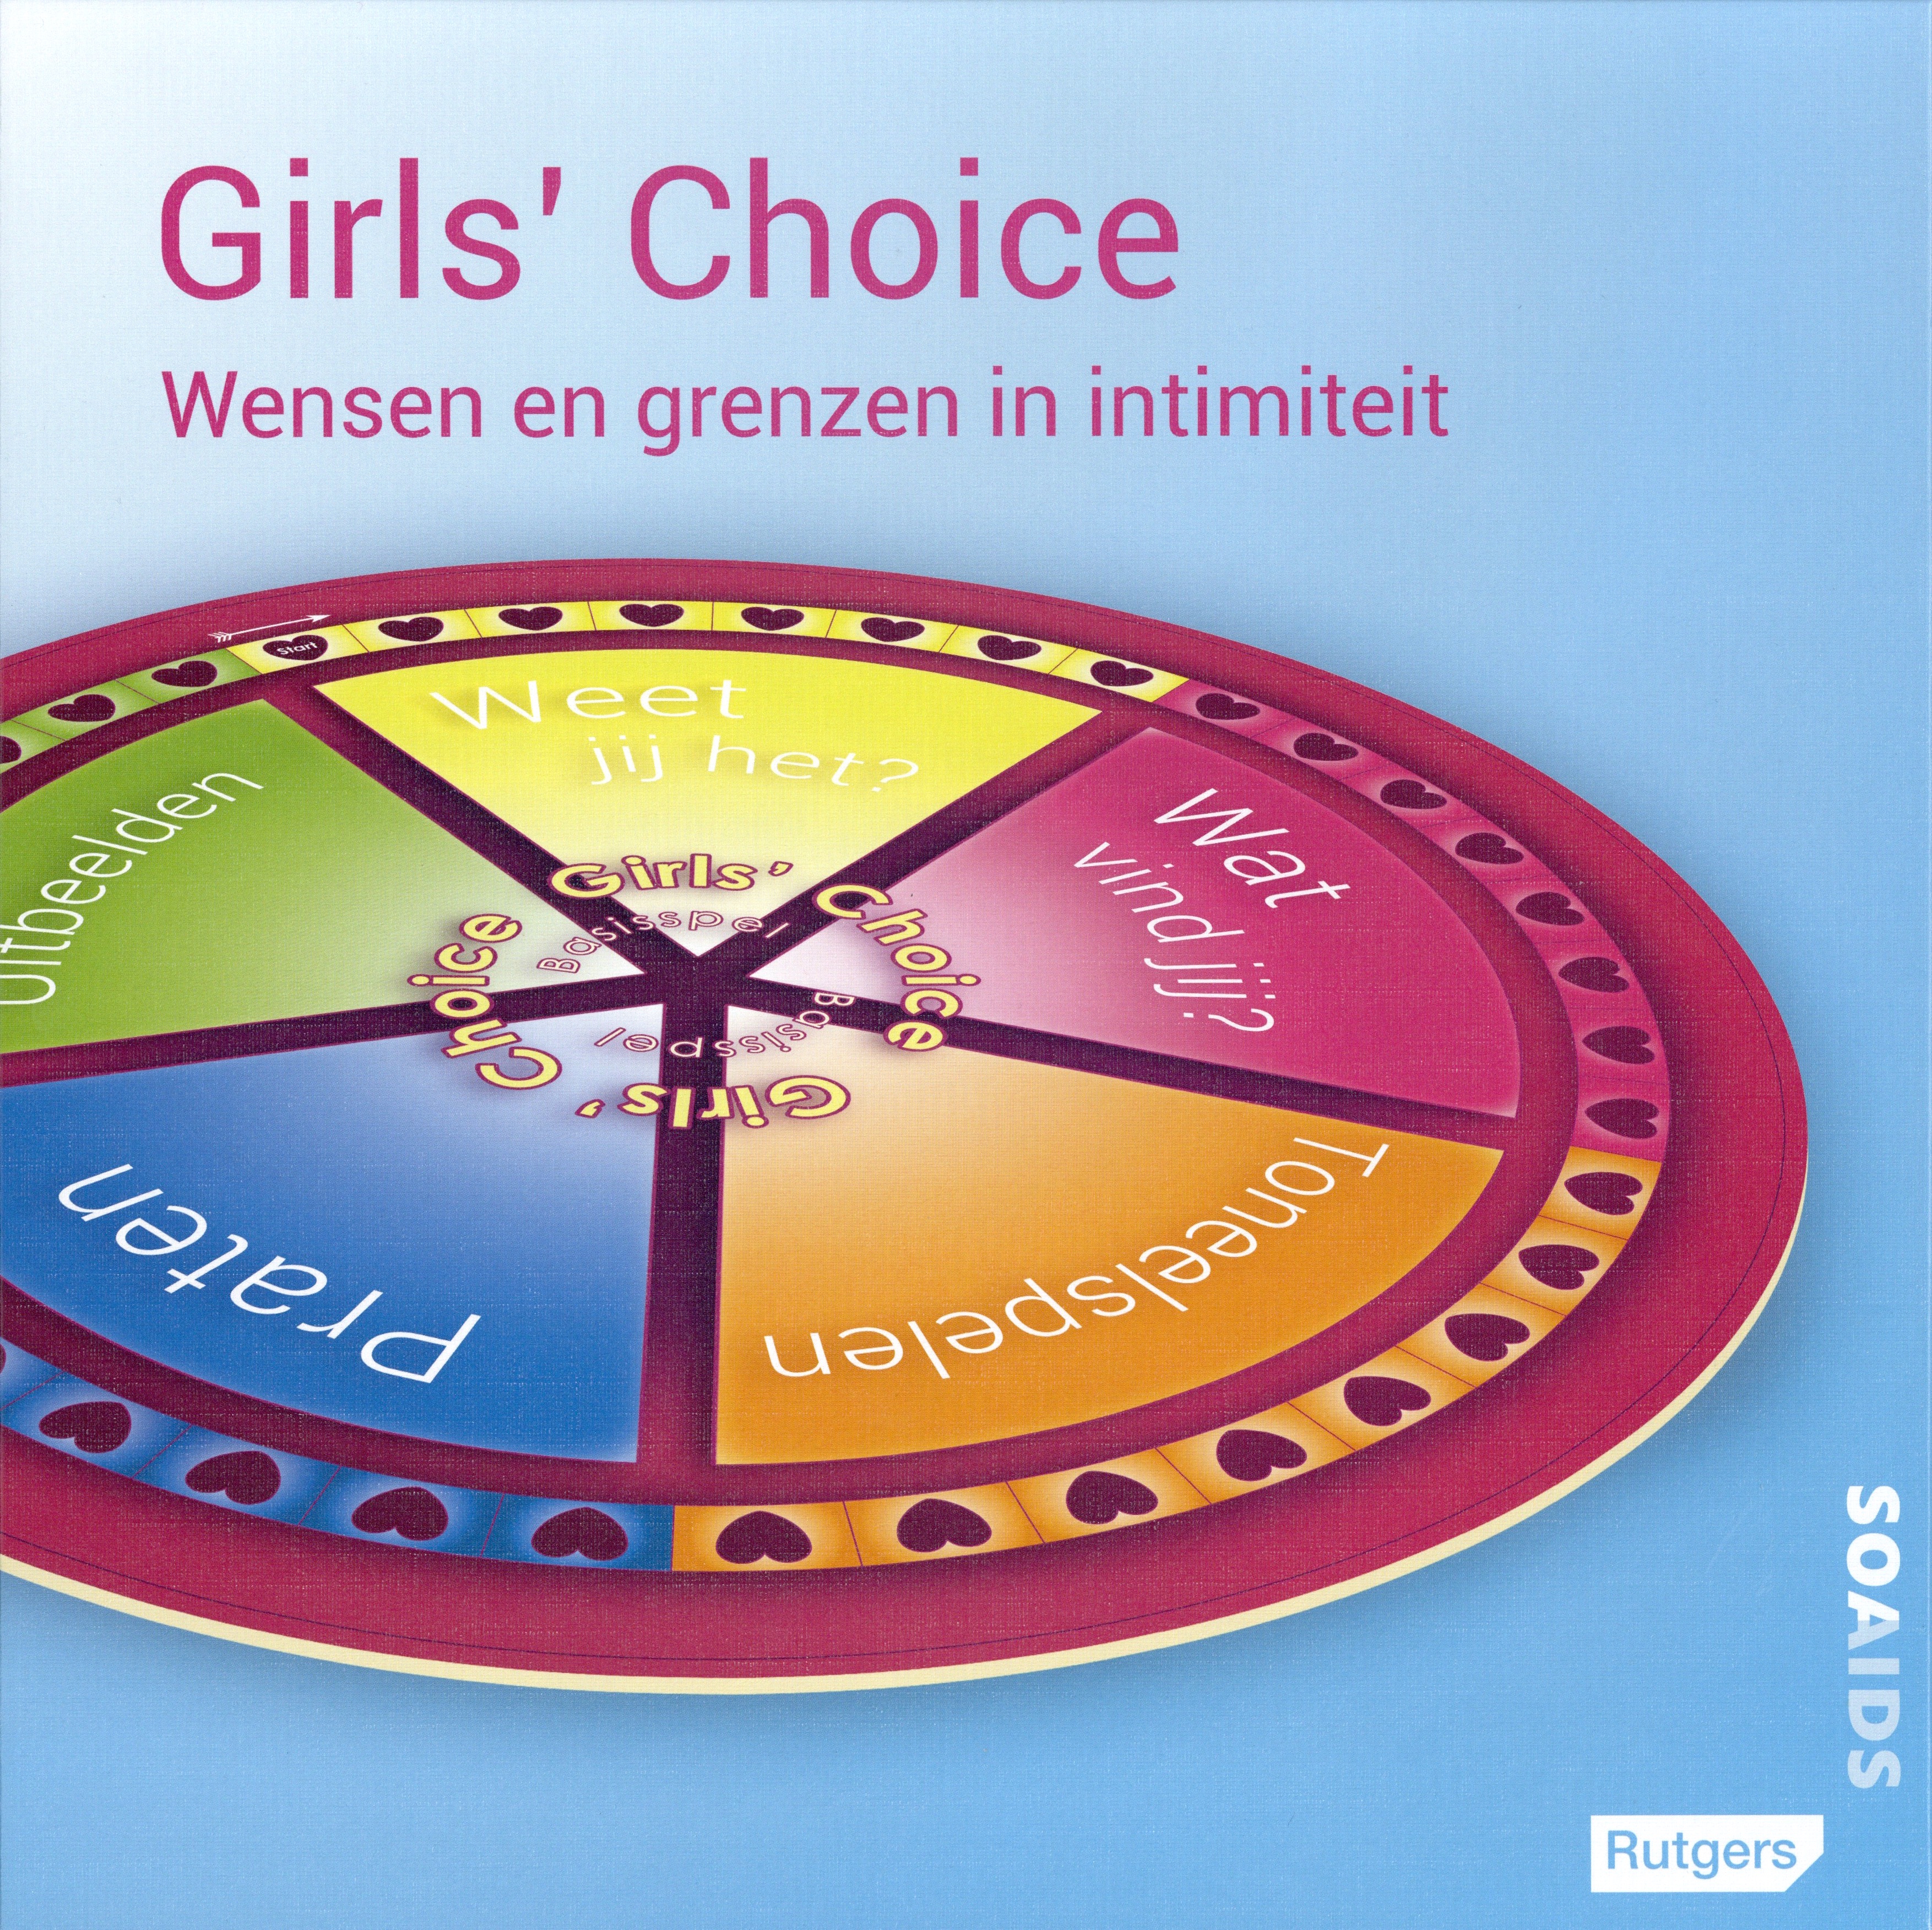 Girls' Choice - Wensen en grenzen in intimiteit